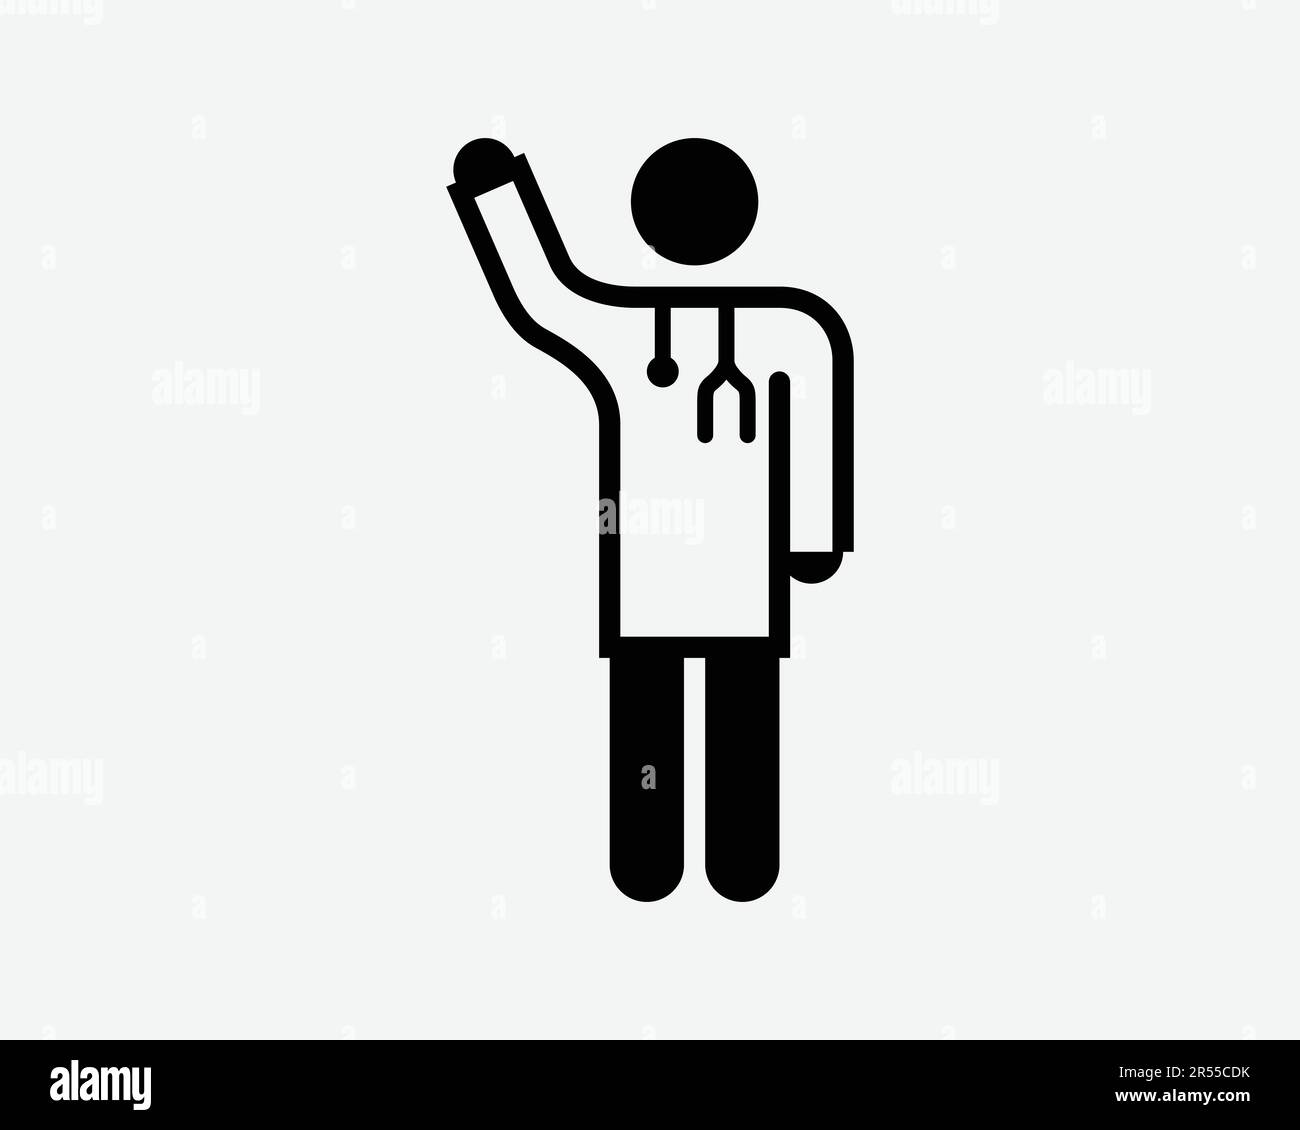 Arzt Hand heben Symbol Anruf Pose Gesture Gesundheitsarbeiter Arzt Chirurg Zeichen Schwarze Grafik Illustration Clipart EPS Vektor Stock Vektor